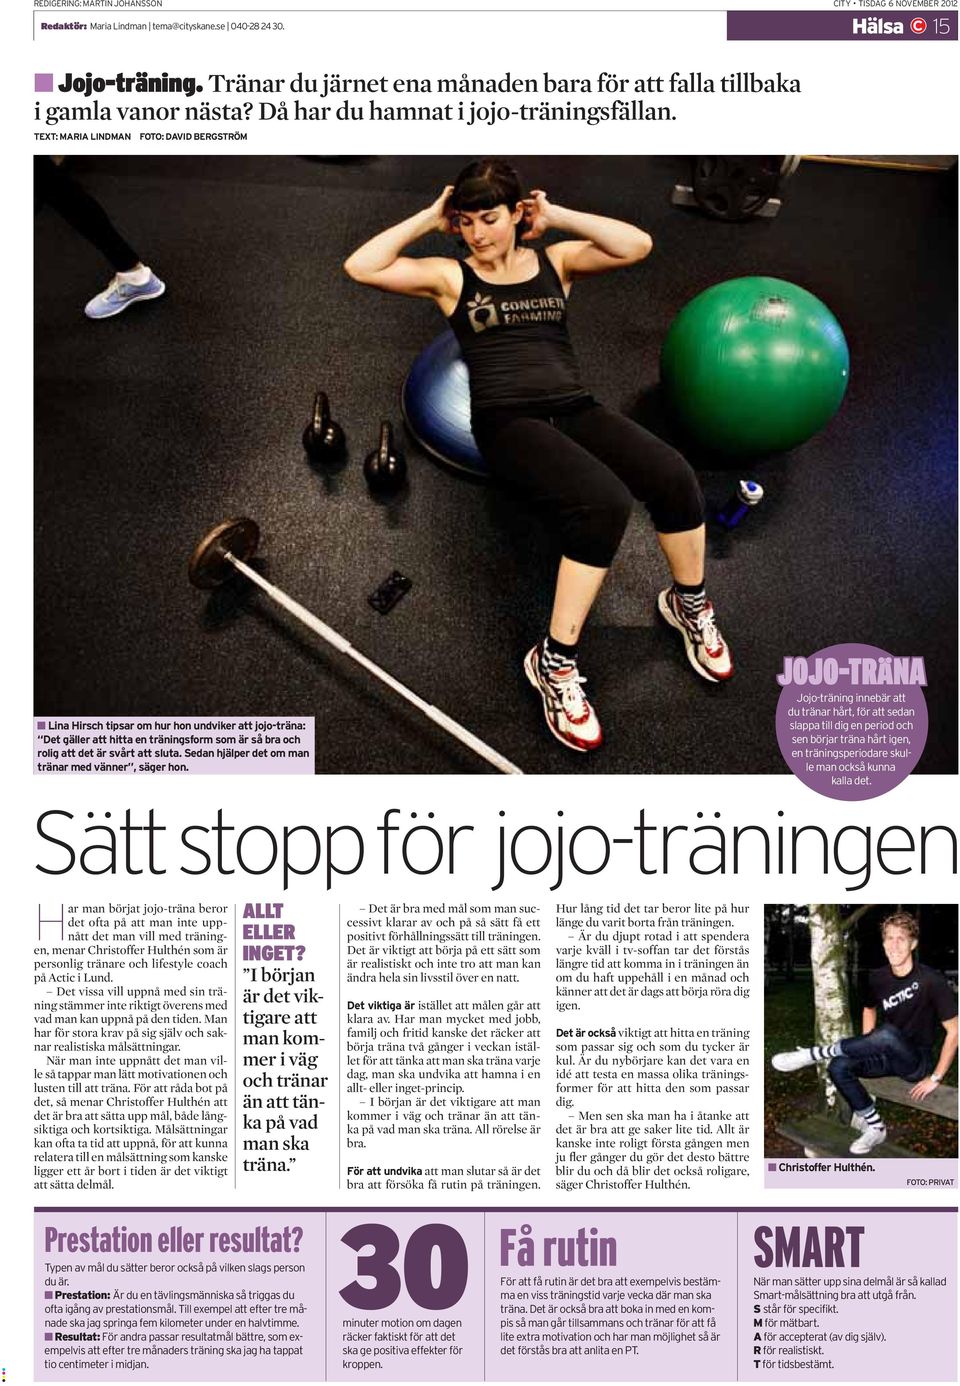 TEXT: MARIA LINDMAN FOTO: DAVID BERGSTRÖM Lina Hirsch tipsar om hur hon undviker att jojo-träna: Det gäller att hitta en träningsform som är så bra och rolig att det är svårt att sluta.